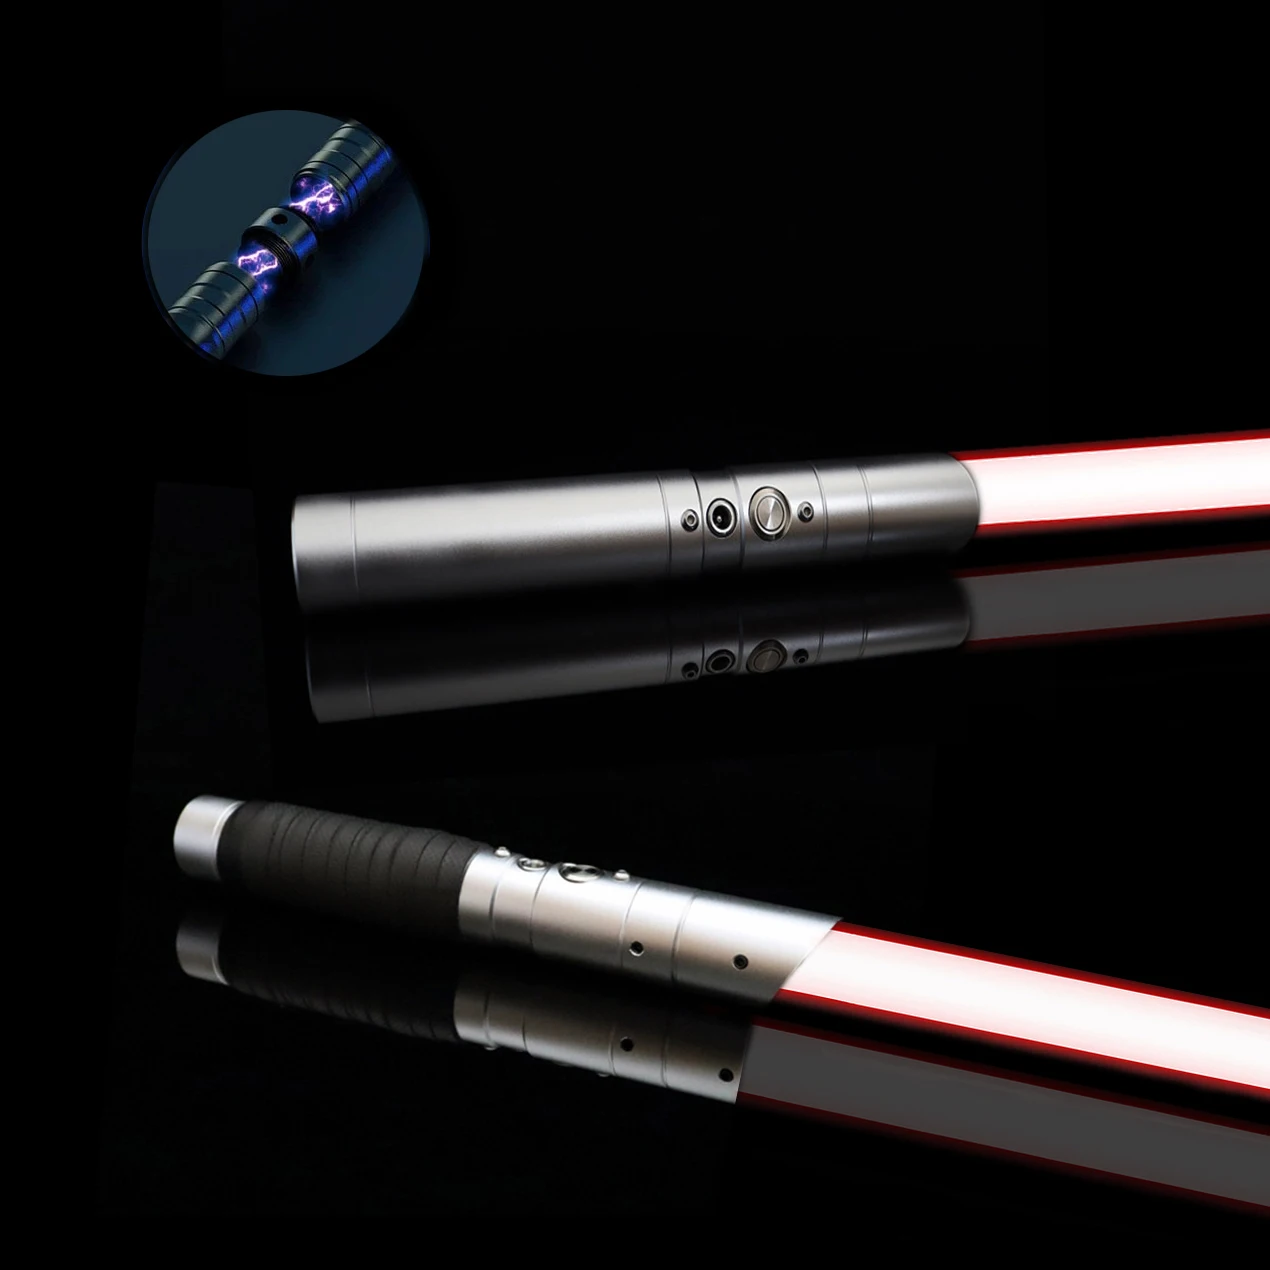 lightsaber-heavy-dueling-metal-handle-rgb-7-colors-kpop-lightstick-change-force-fx-foc-blaster-toys-gift-laser-sword-brinquedos